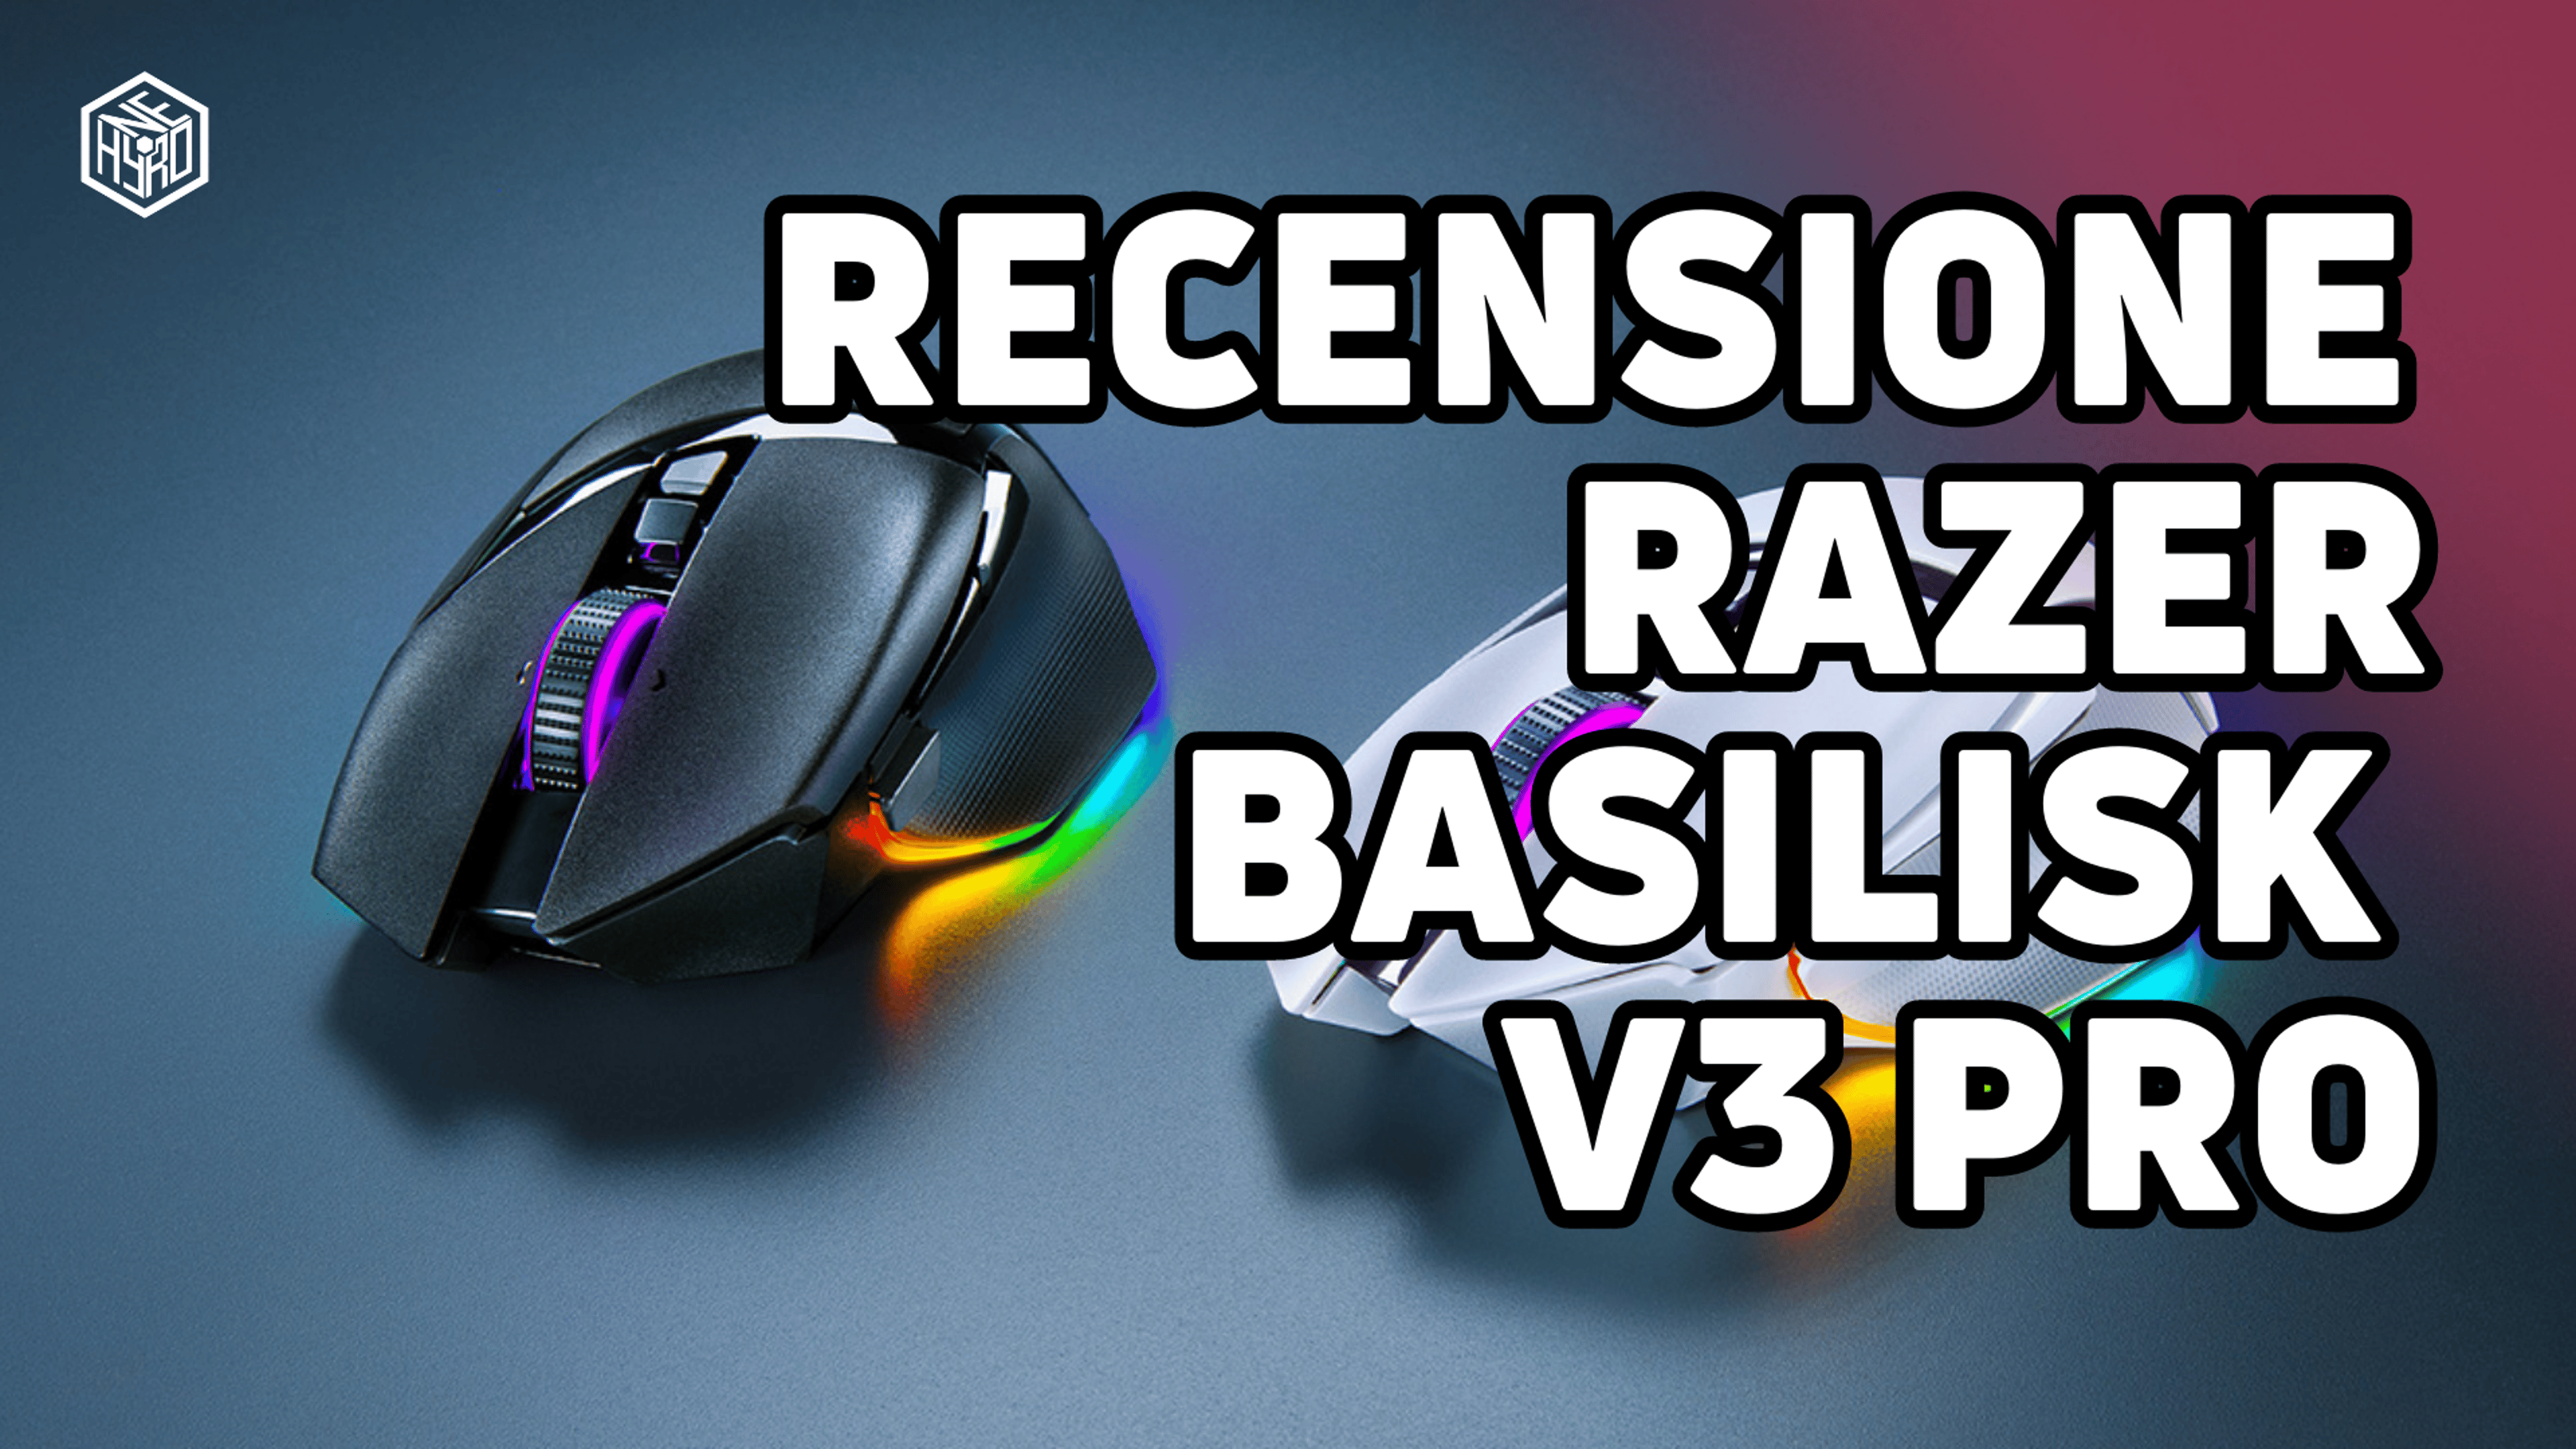 Razer Basilisk V3 Pro, Recensione – Il mouse per giocare e lavorare Cover